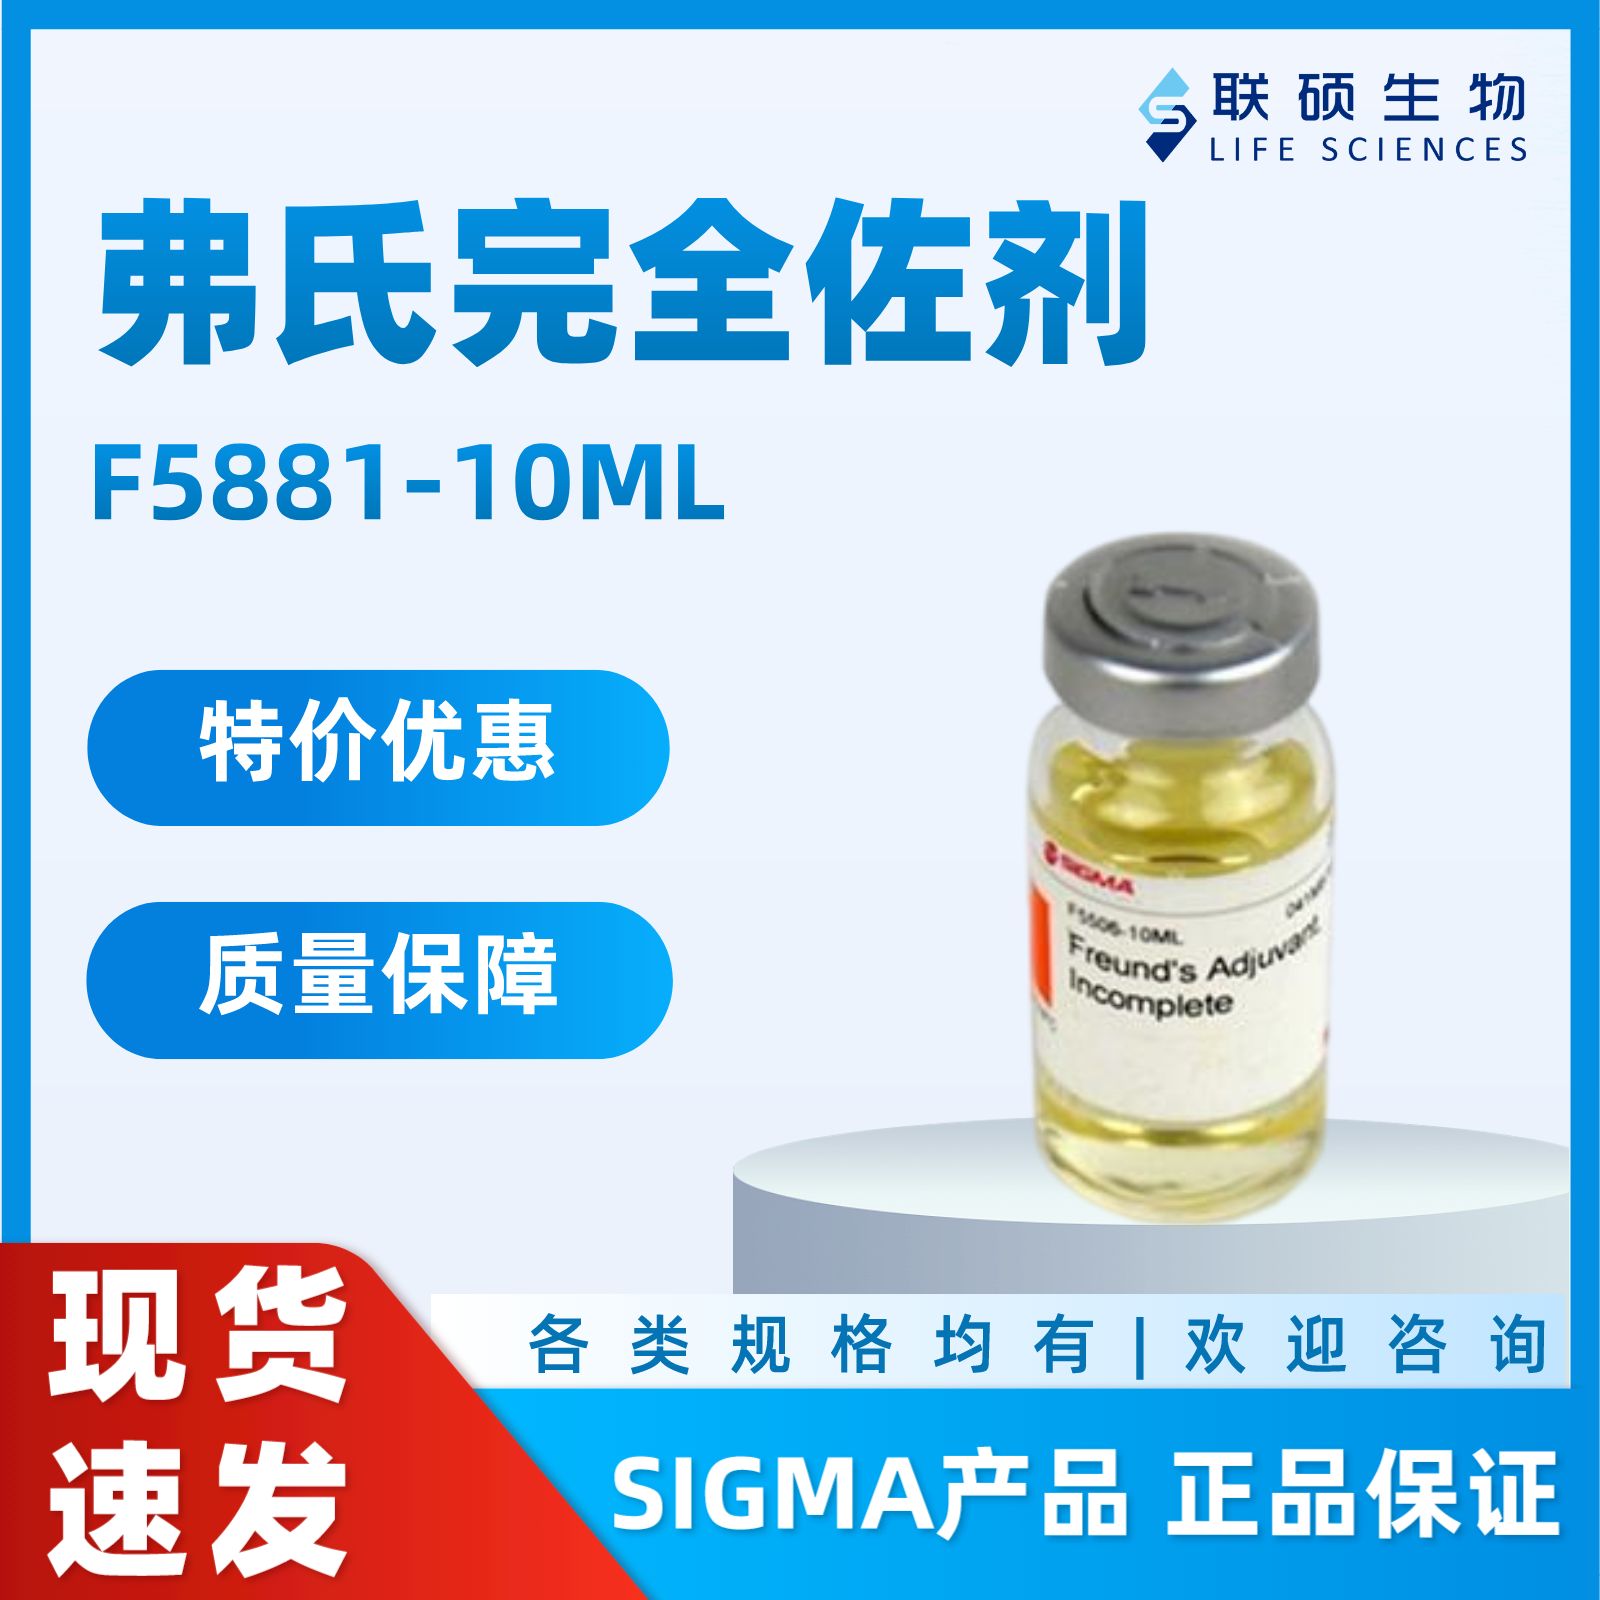 特价：Sigma-F5881 弗氏完全佐剂 10ML原装